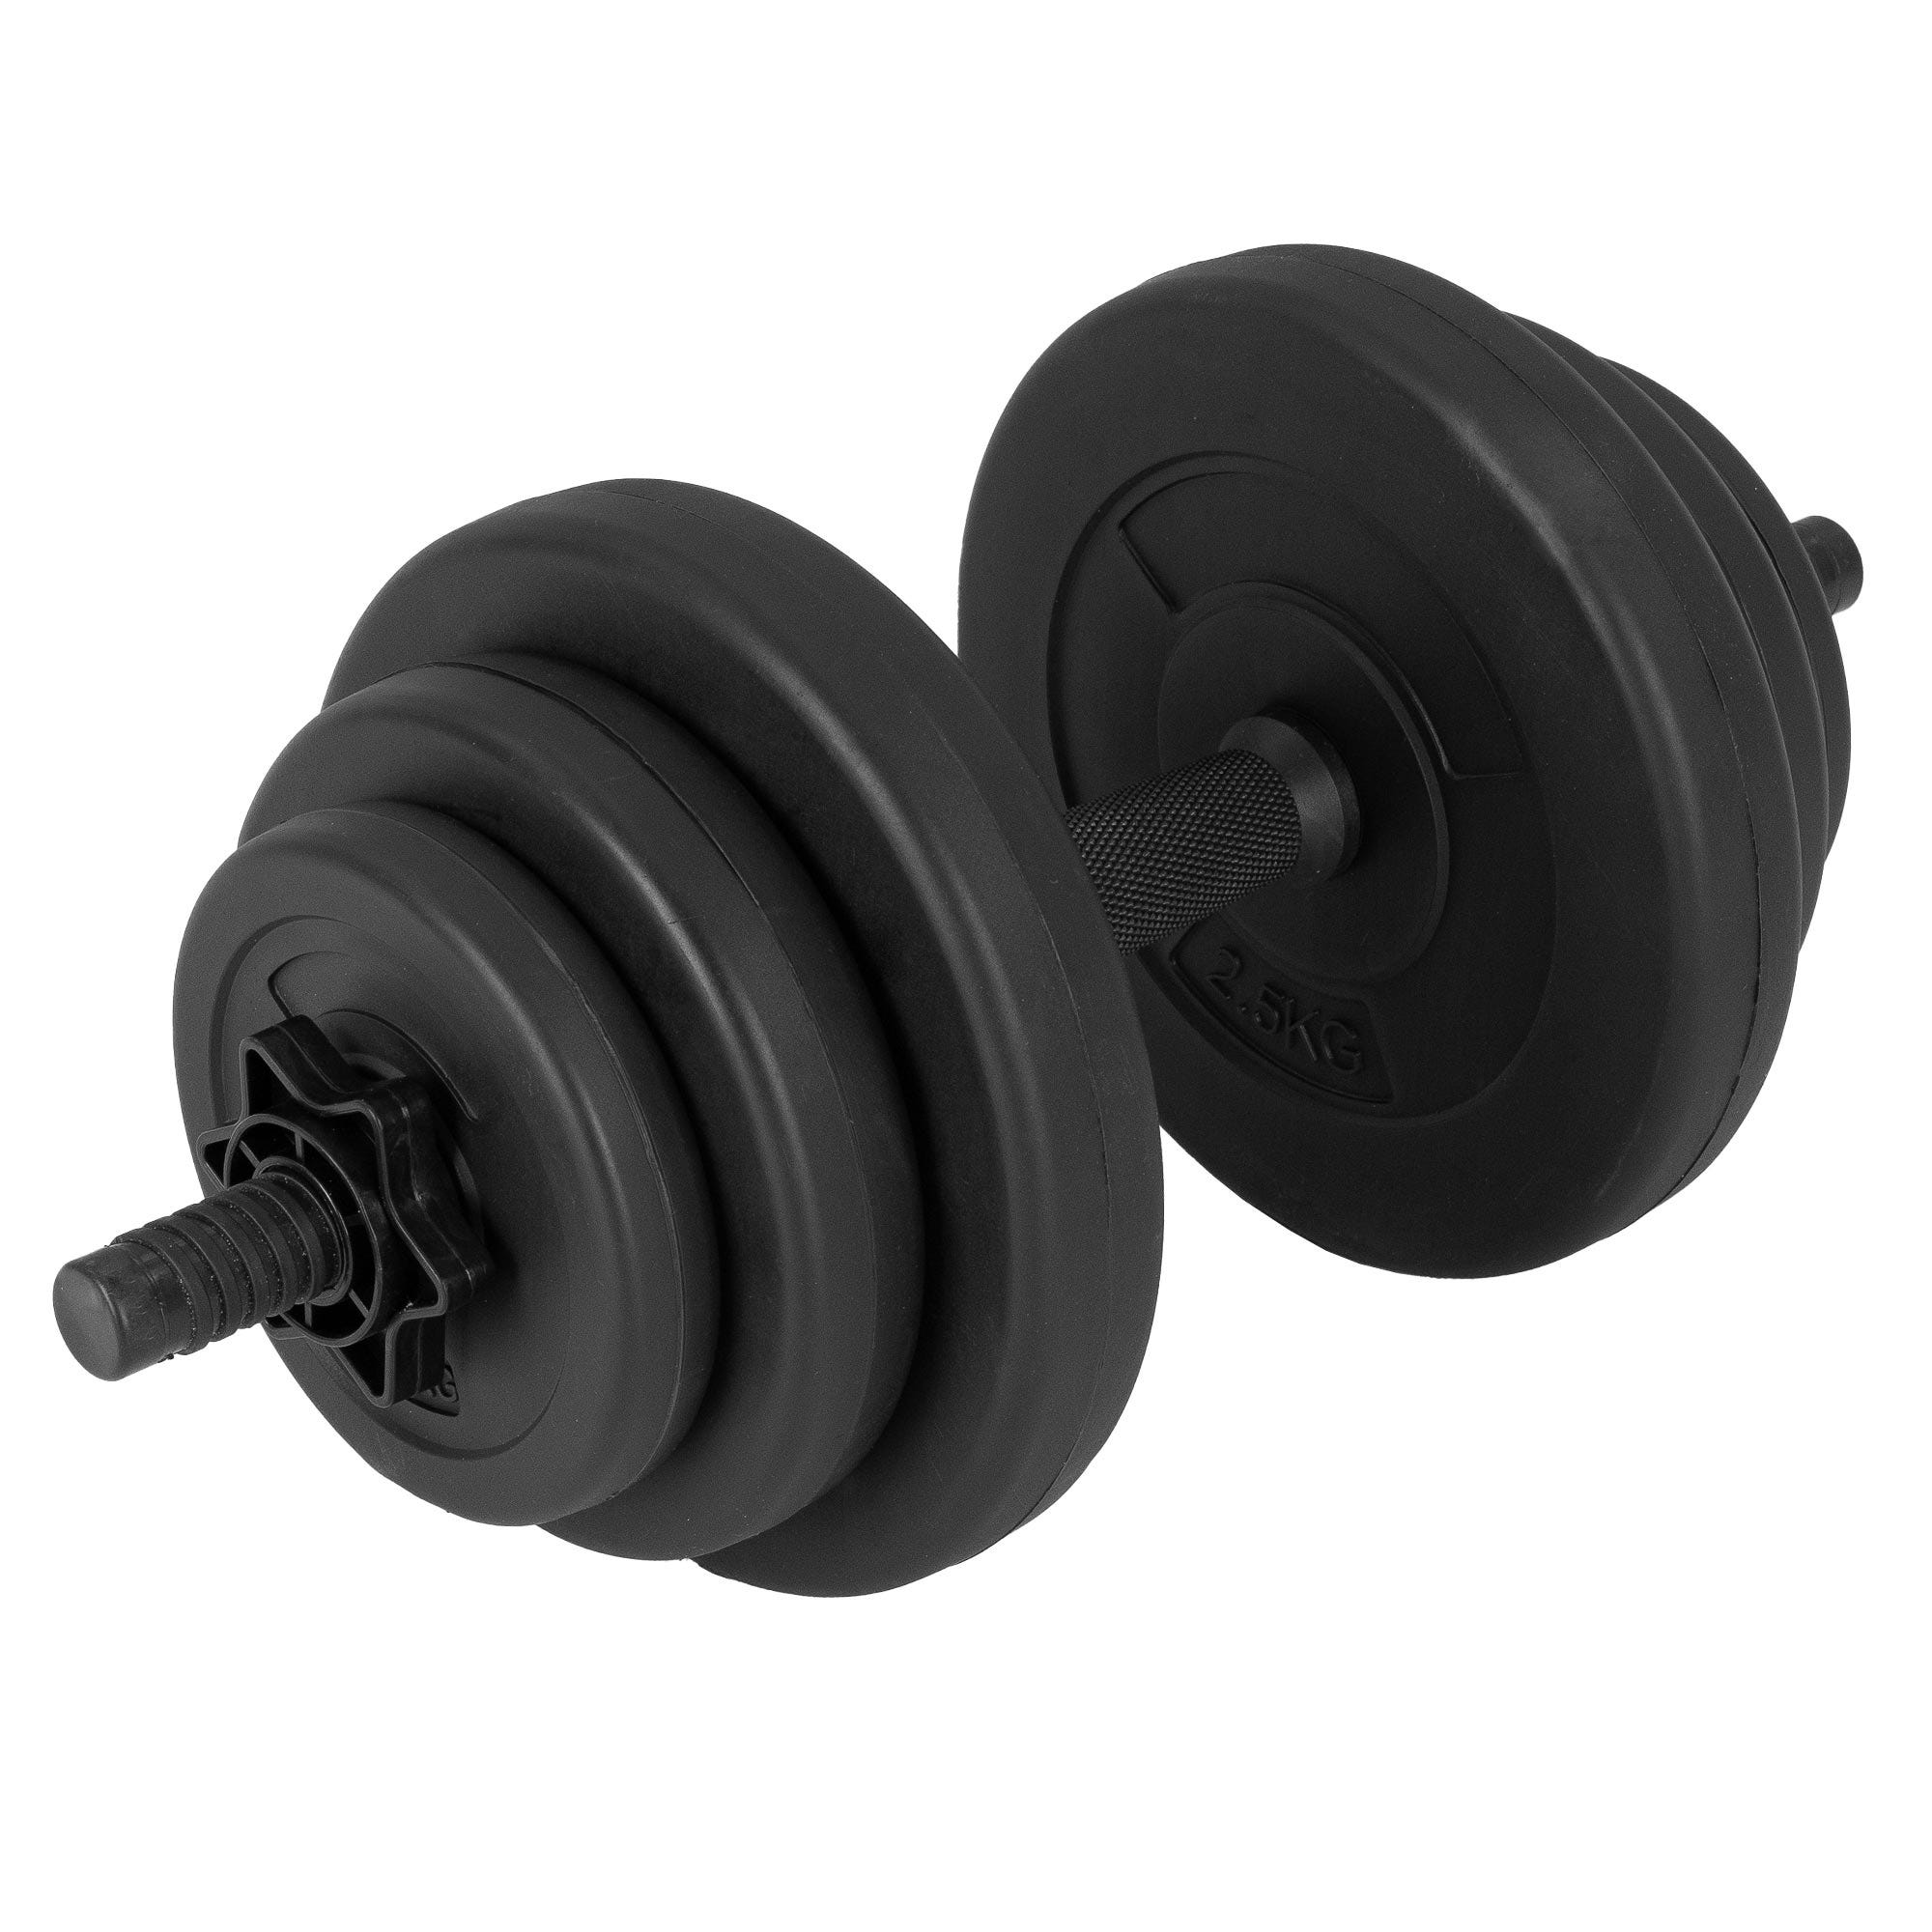 Haltéres 10 kg barre + plaques poids gym entraînement musculation noir